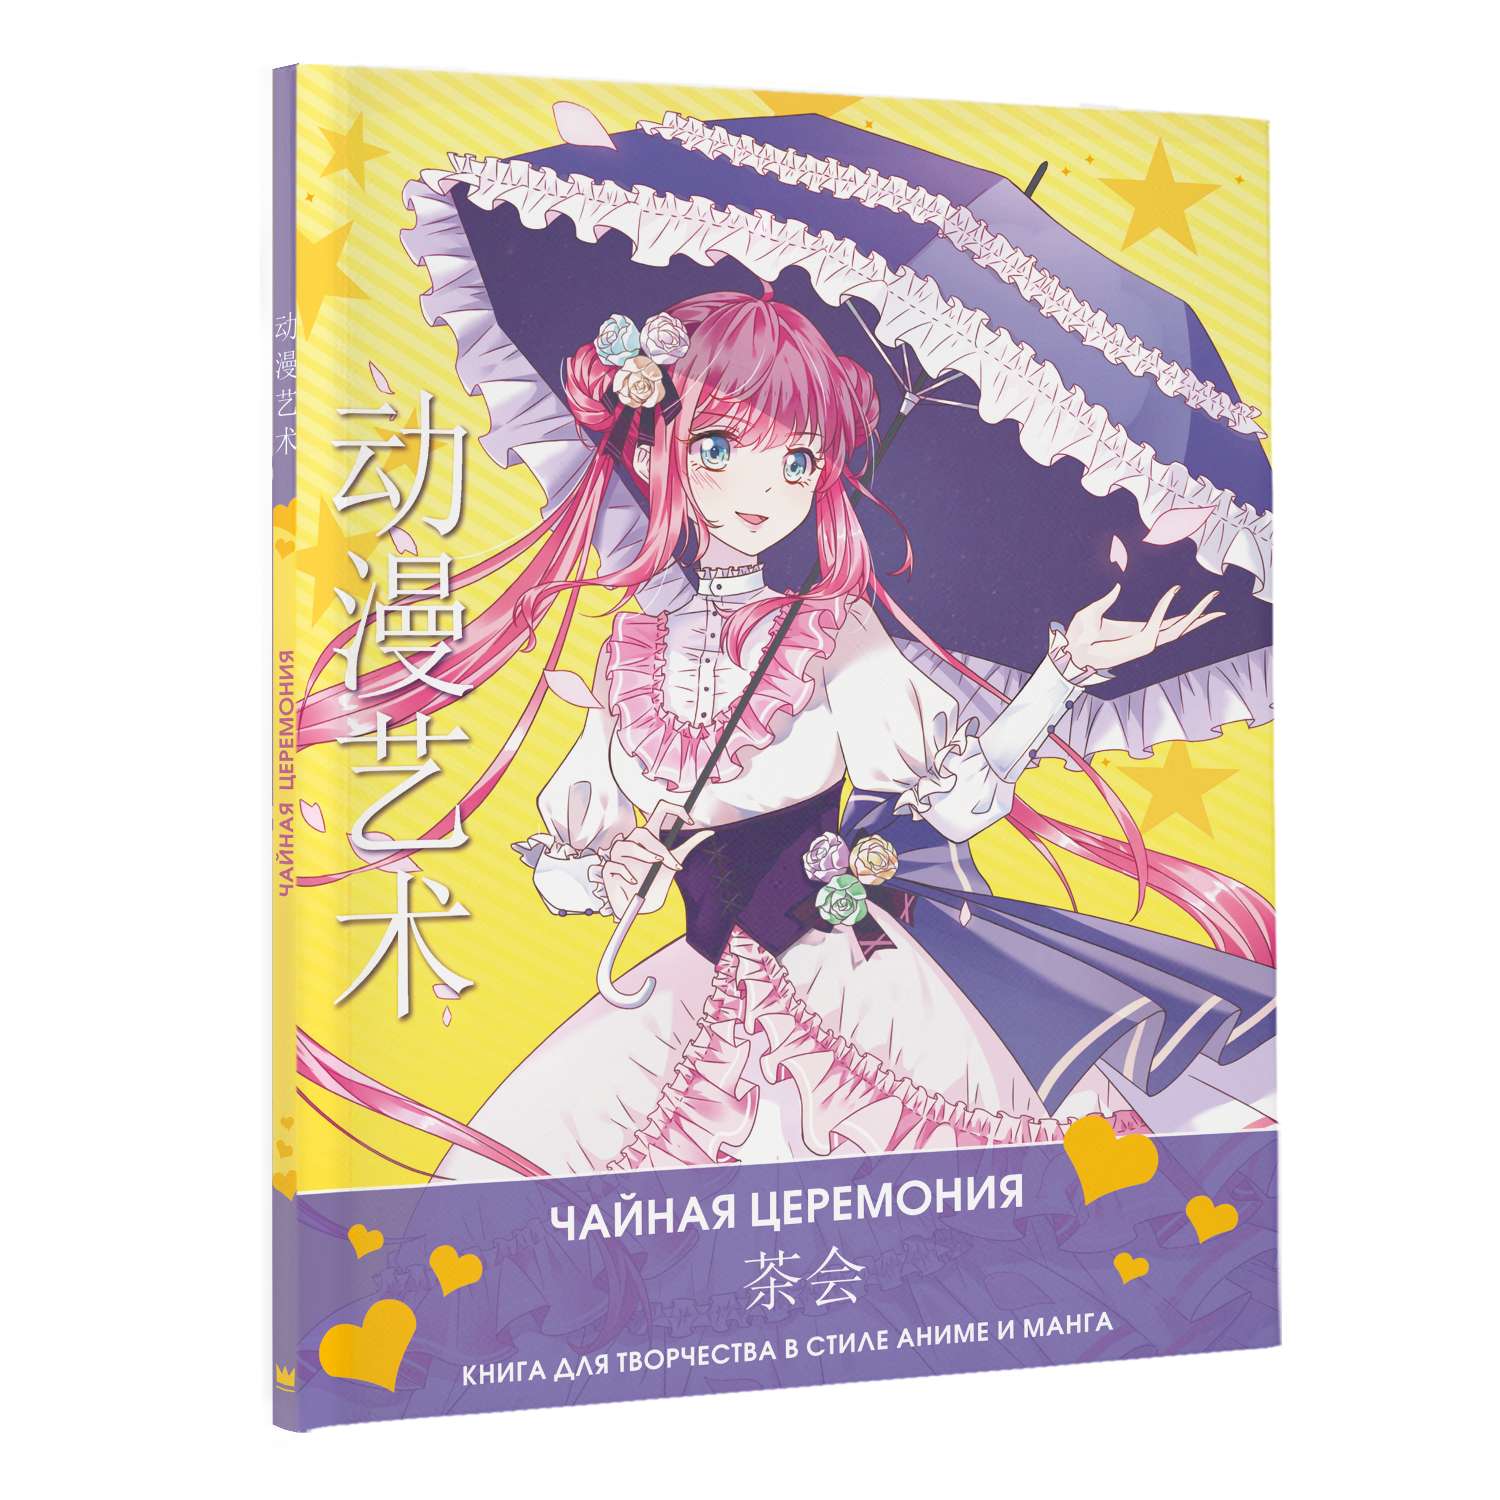 Раскраска Anime Art Чайная церемония Книга для творчества в стиле аниме и манга - фото 2